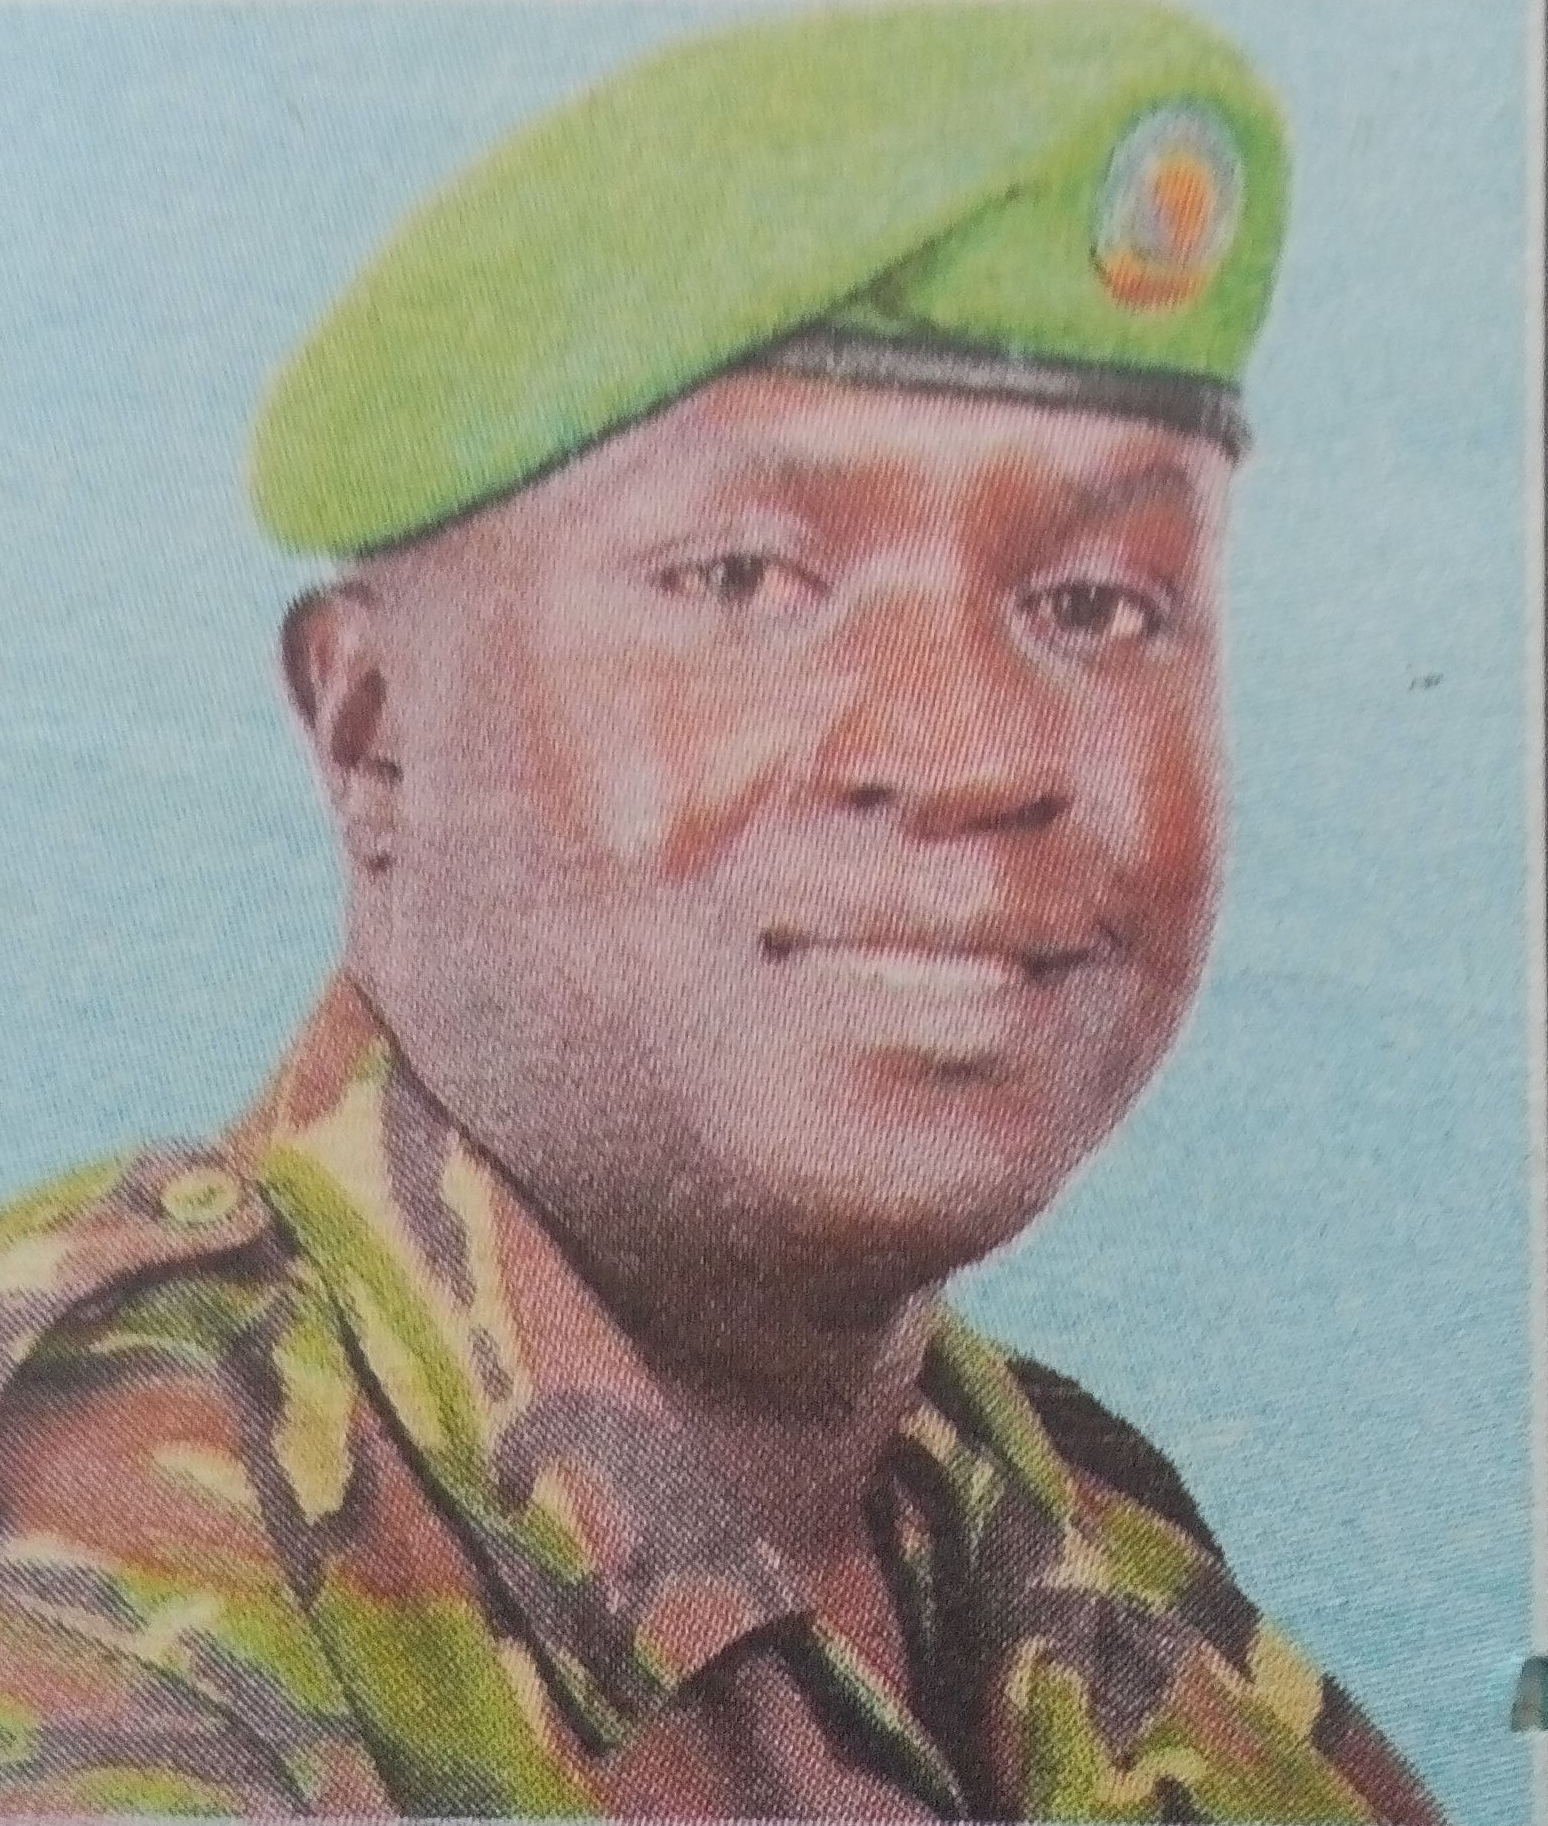 Obituary Image of Apollo Chumba